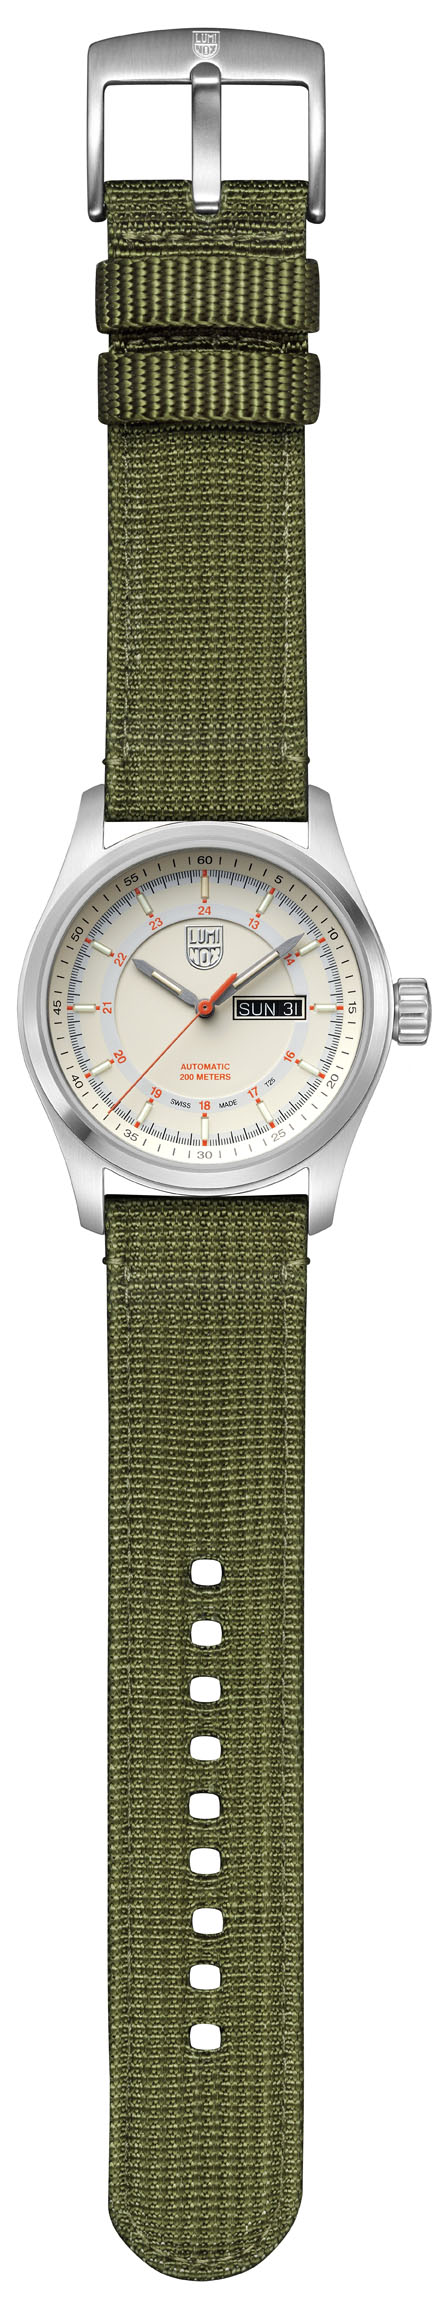 ルミノックス LUMINOX 腕時計 メンズ 1903 アタカマ フィールド オートマティック 1900シリーズ Atacama Field Automatic 1900 SERIES 自動巻き（SW 220-1/手巻き付） ブルーxブルー アナログ表示